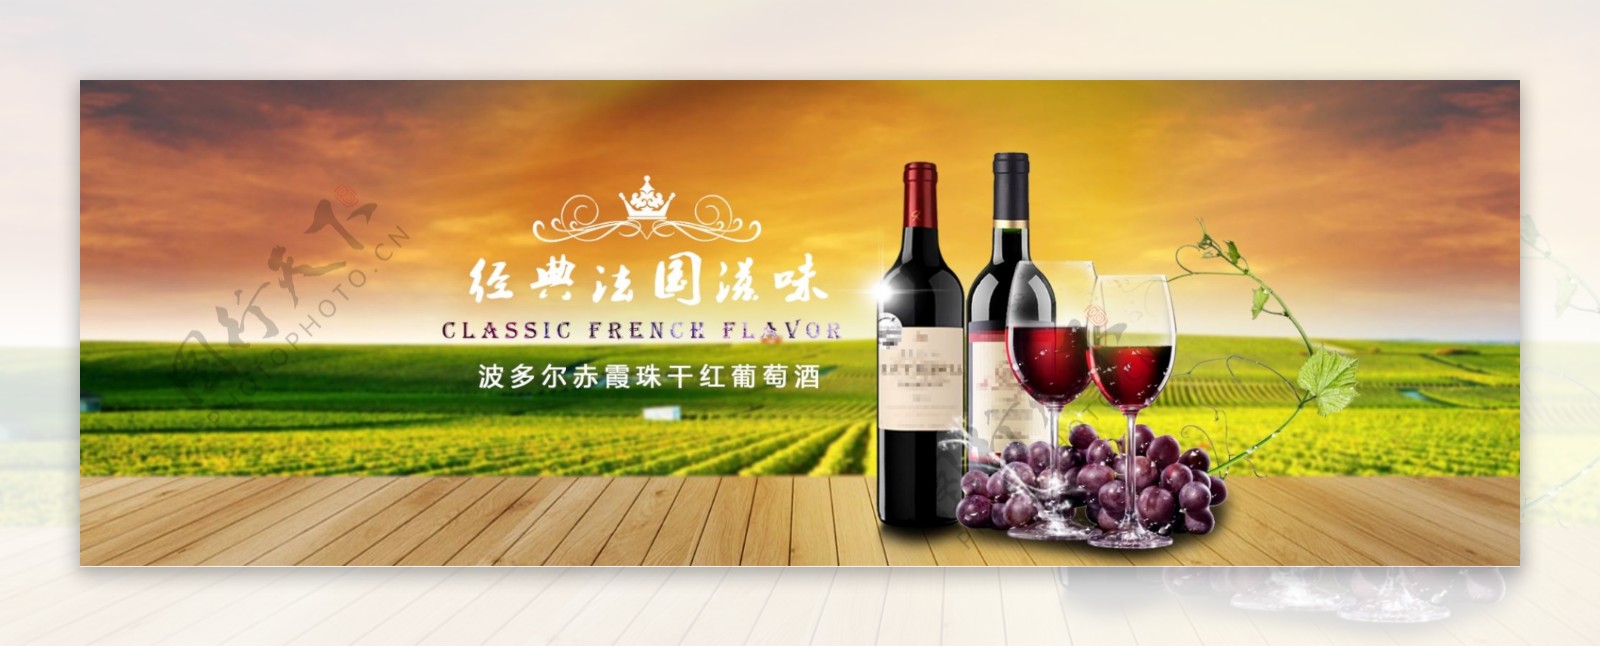 法国干红葡萄酒红酒banner海报